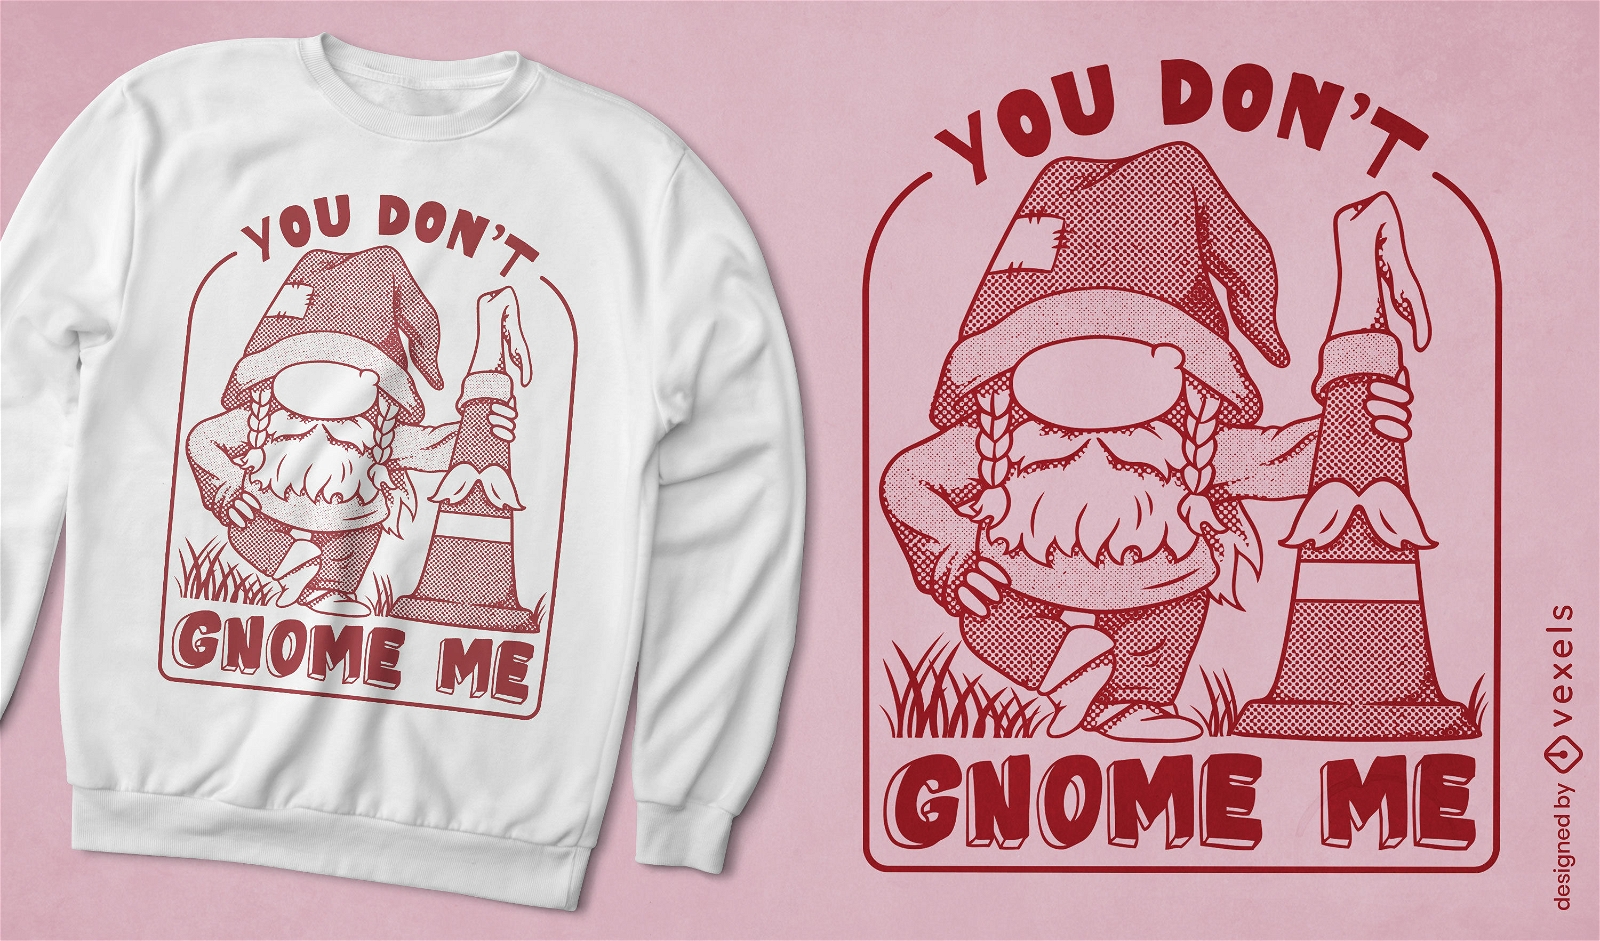 Gnome funny monochromatic t-shirt design